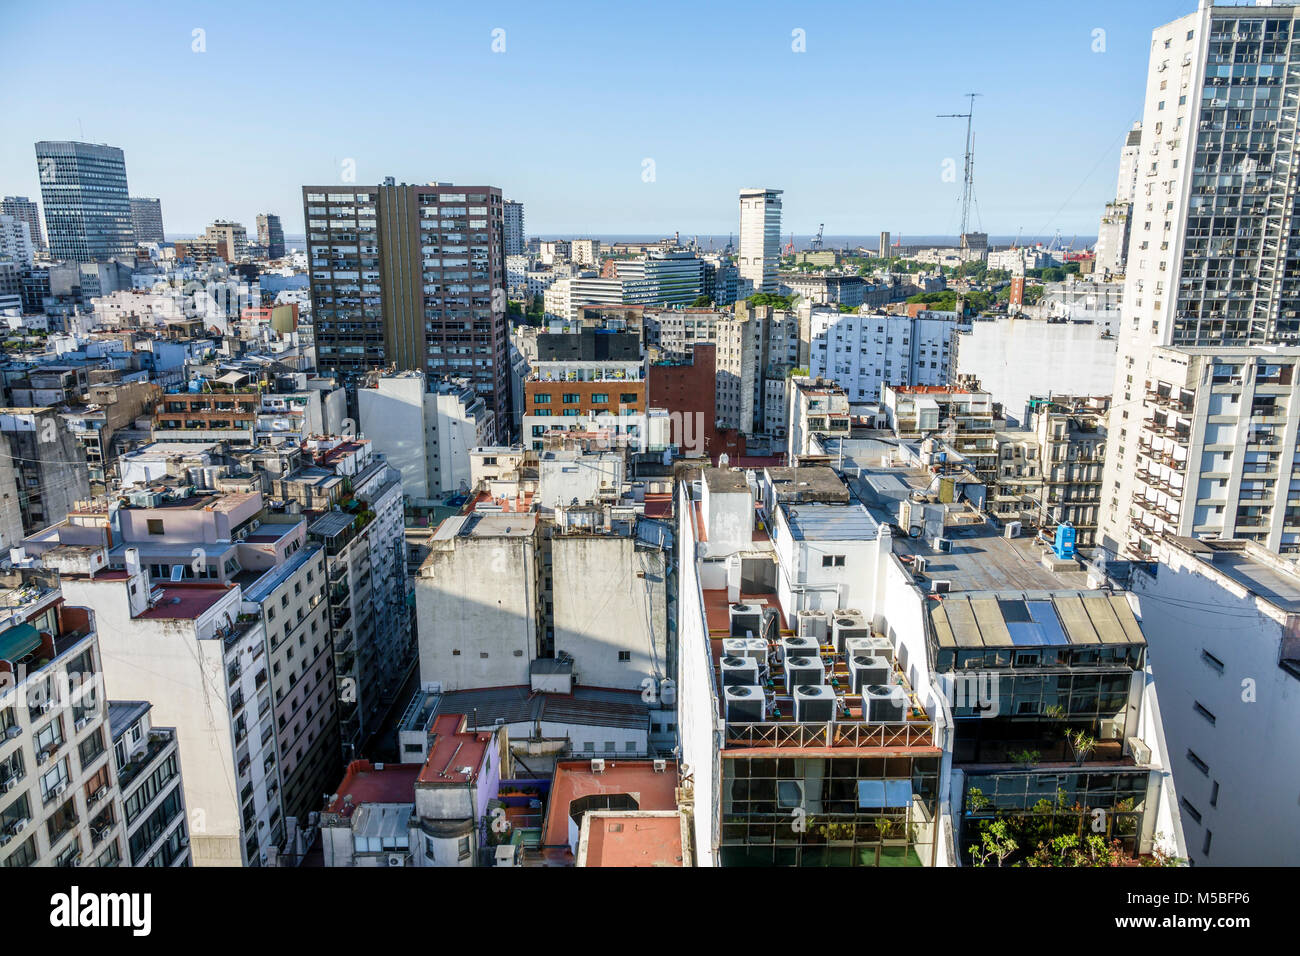 Buenos Aires Argentina,Monserrat,ville horizon,bâtiments,gratte-ciel,toits,vue de Sheraton Libertador Hotel,ARG171125355 Banque D'Images